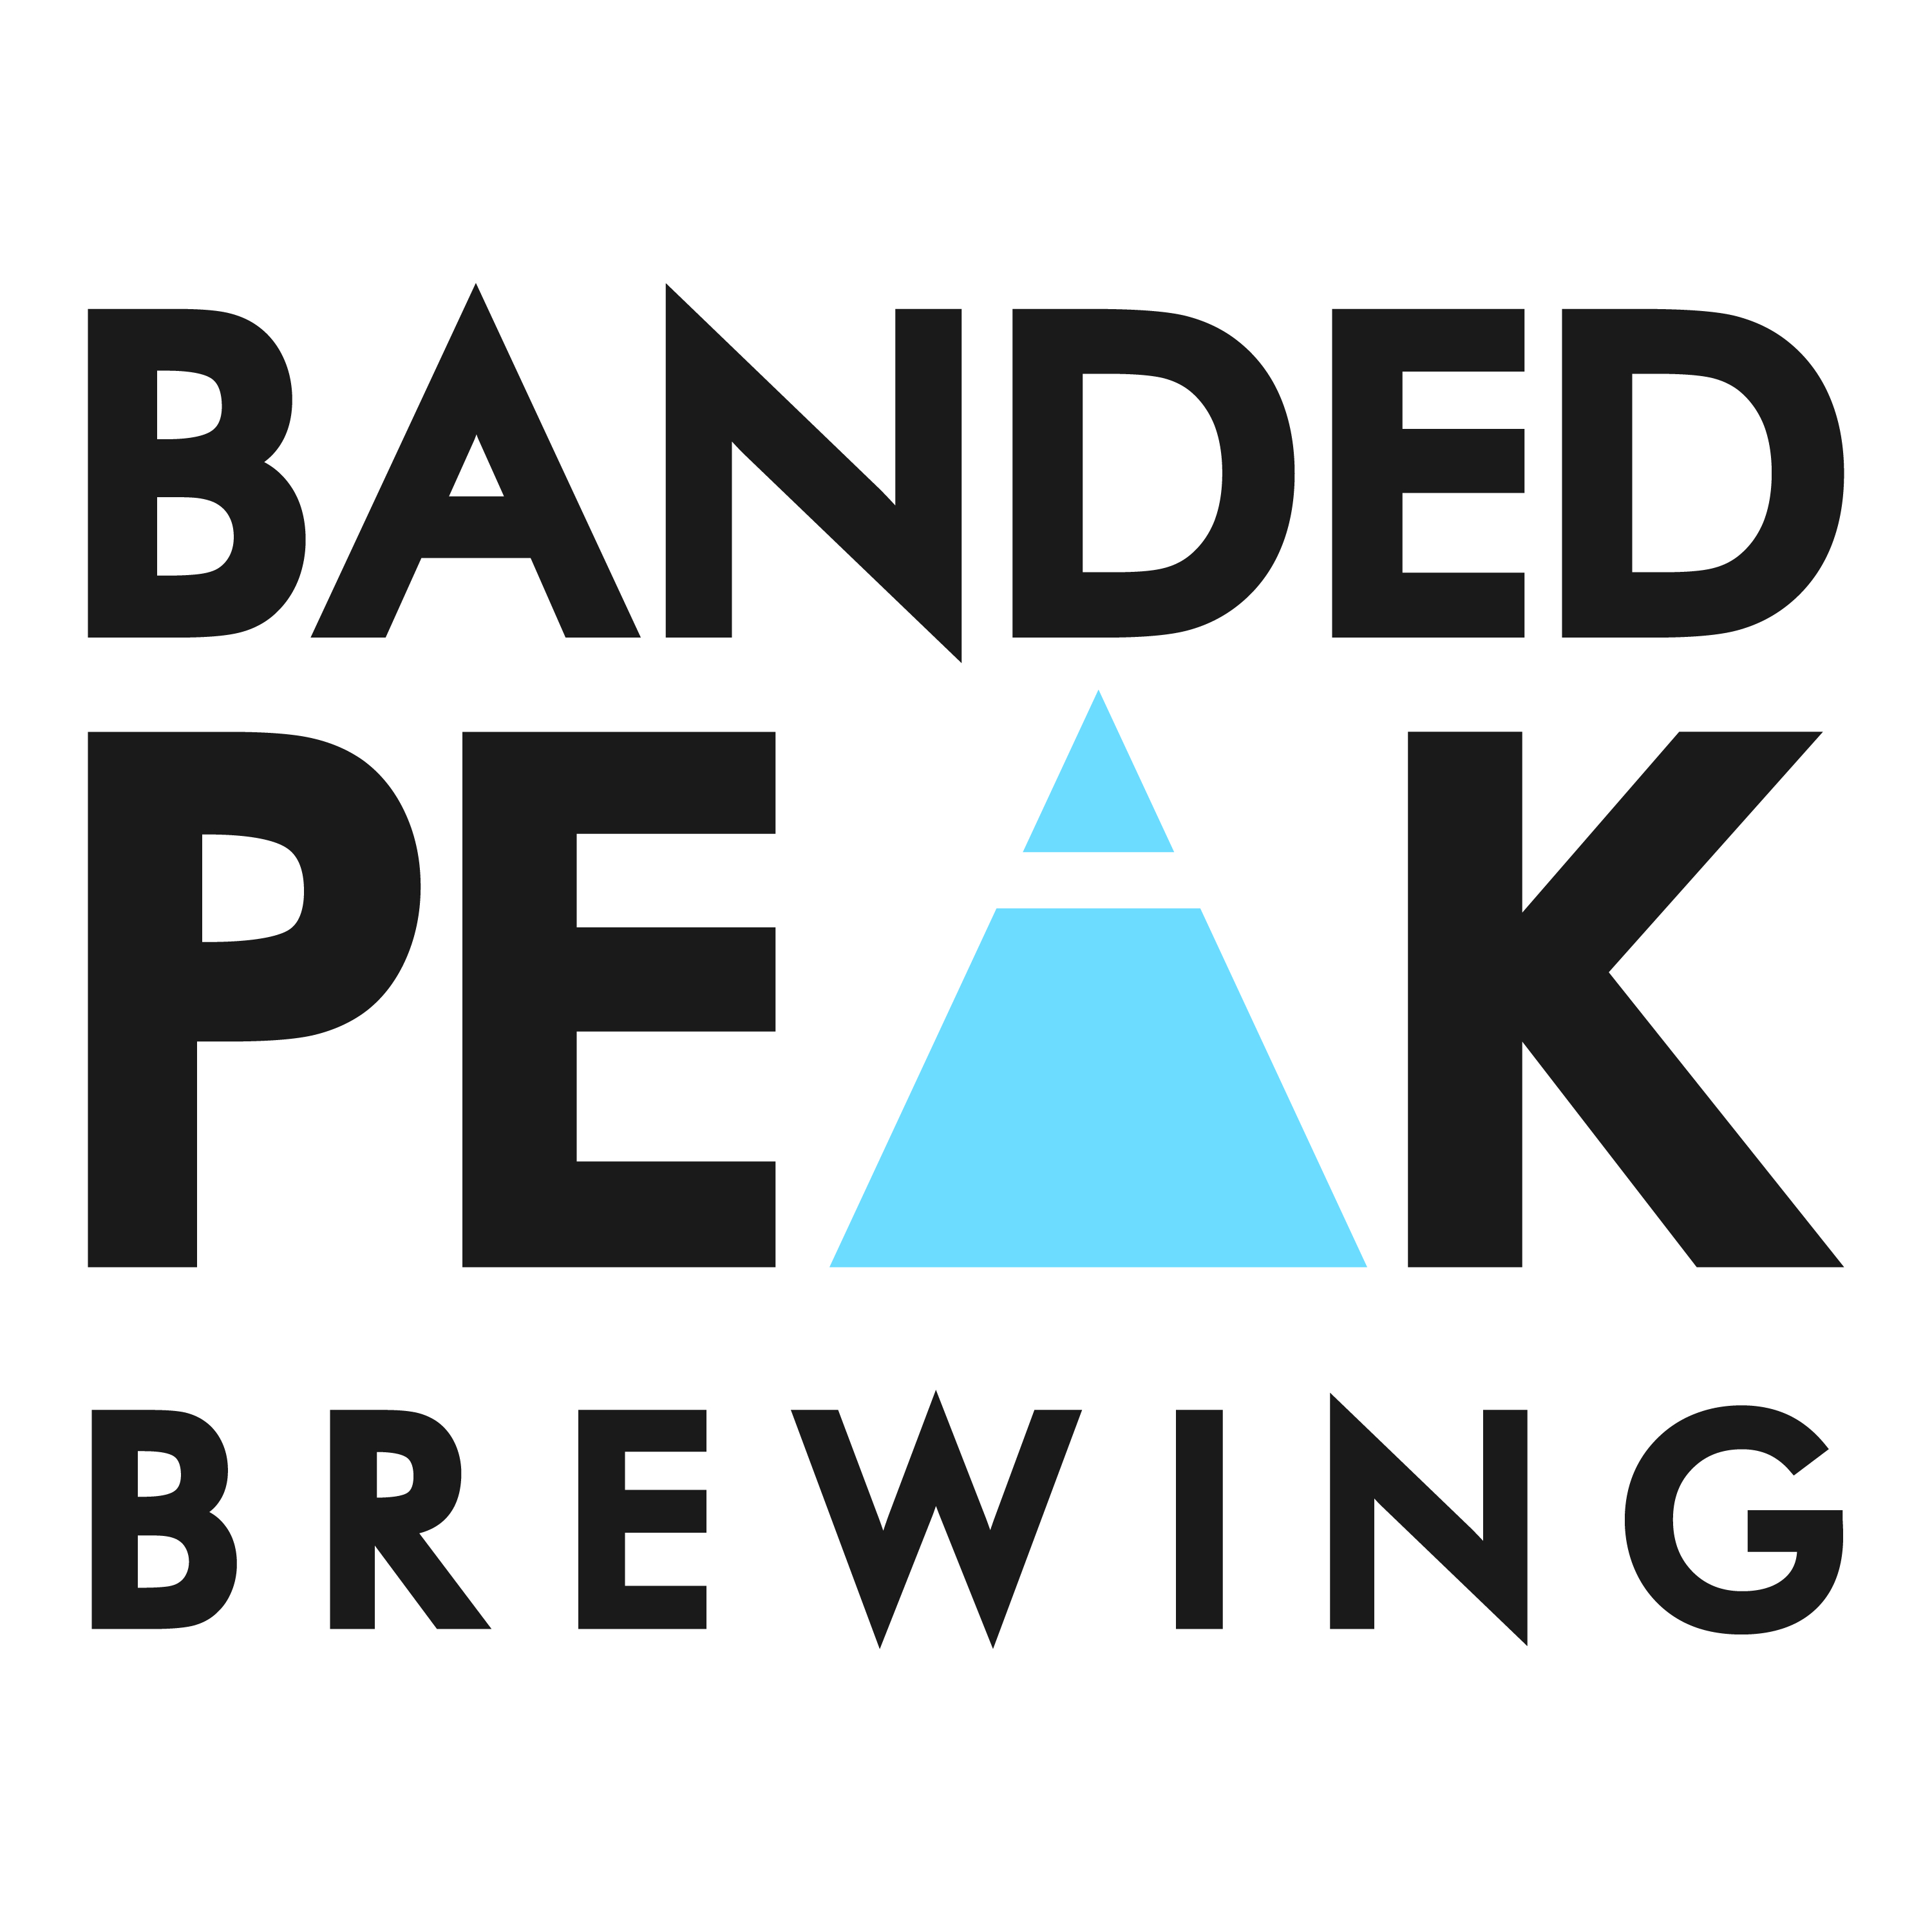 Banded Peak Brewing